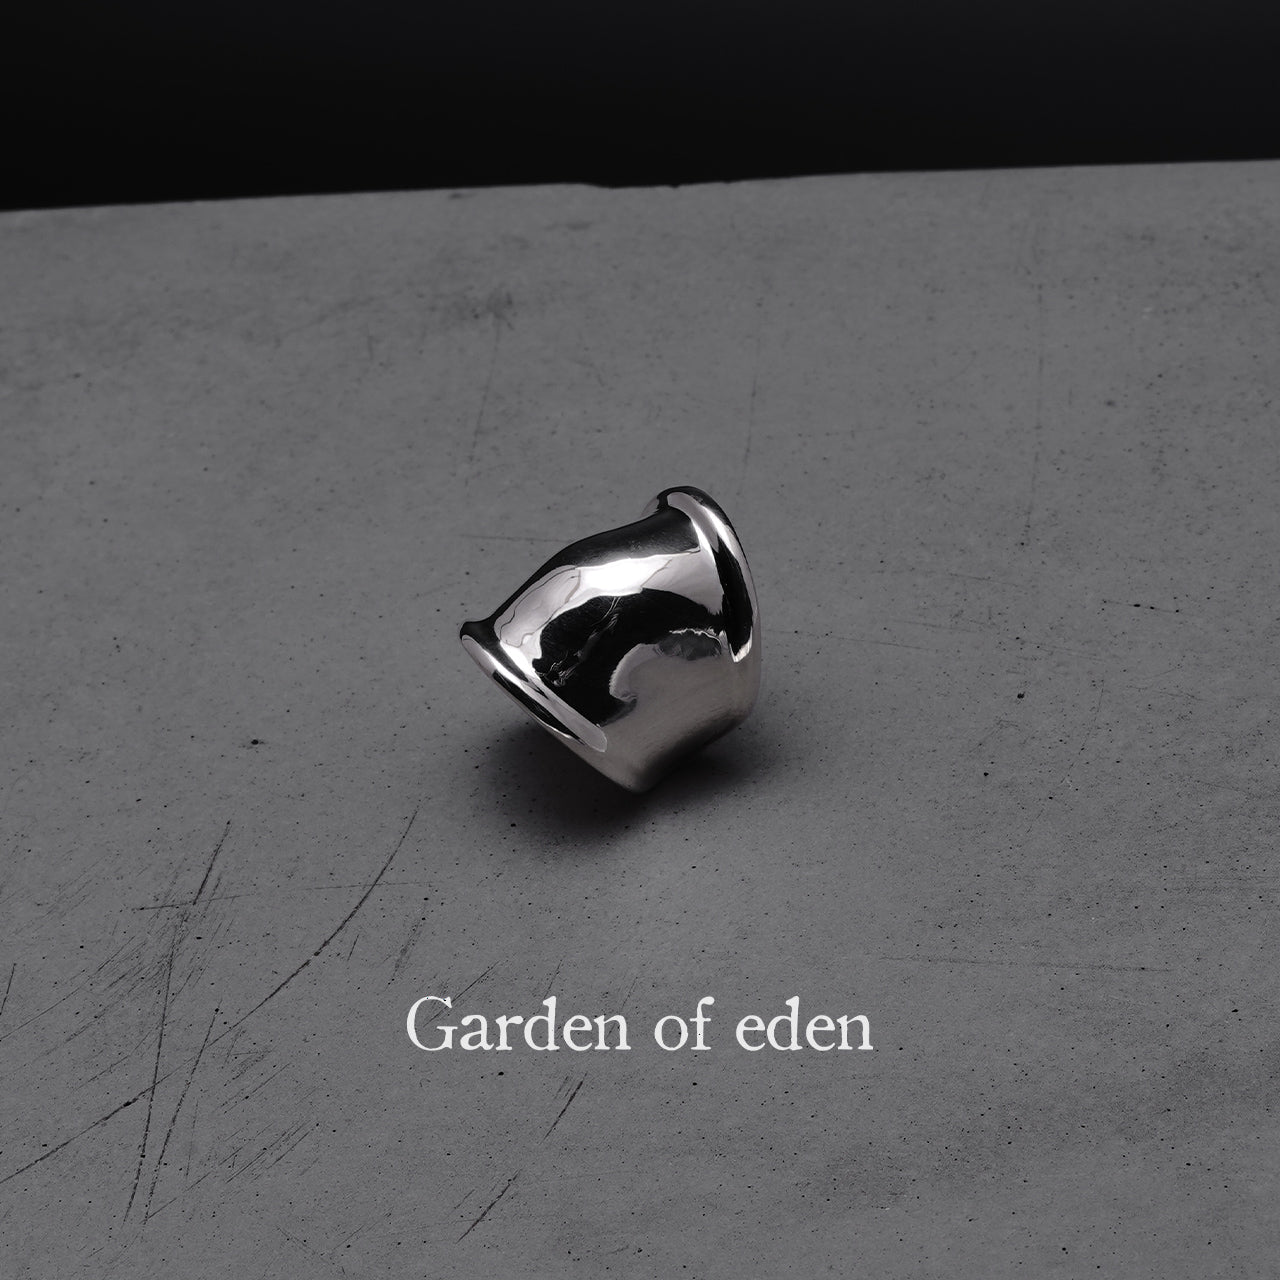 Garden of Eden ガーデンオブエデン ショパン ライト フィンガー ...